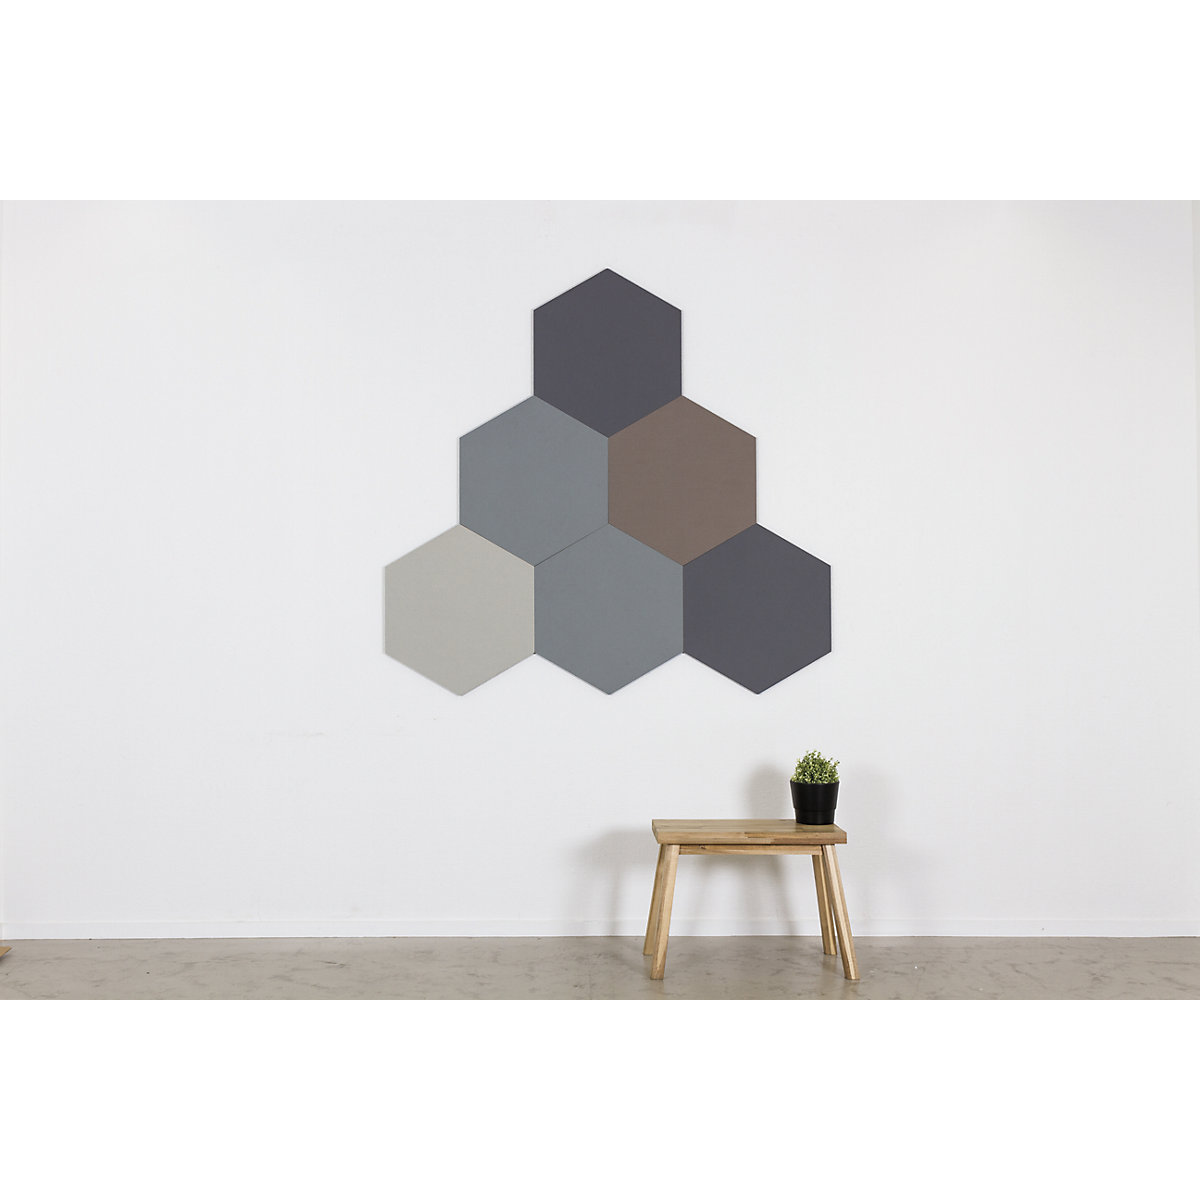 Quadro de pinos com design hexagonal – Chameleon (Imagem do produto 17)-16